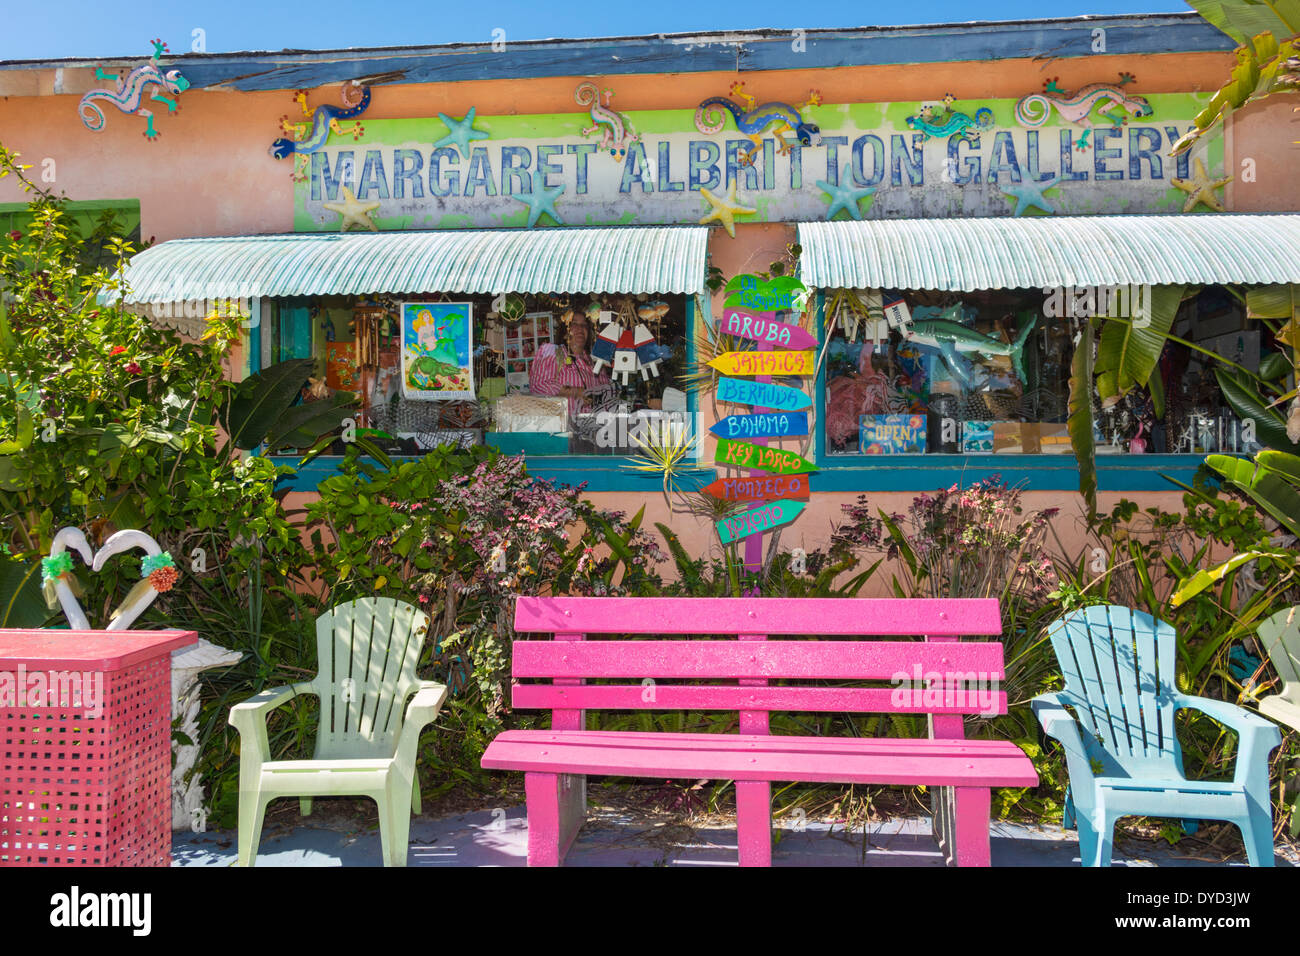 Port de Floride Charlotte Harbor,Placida,marché d'art,panneau,logo,Marg,Road,aret Albritton Gallery,extérieur,banc,coloré,shopping shopper shoppers shop sho Banque D'Images